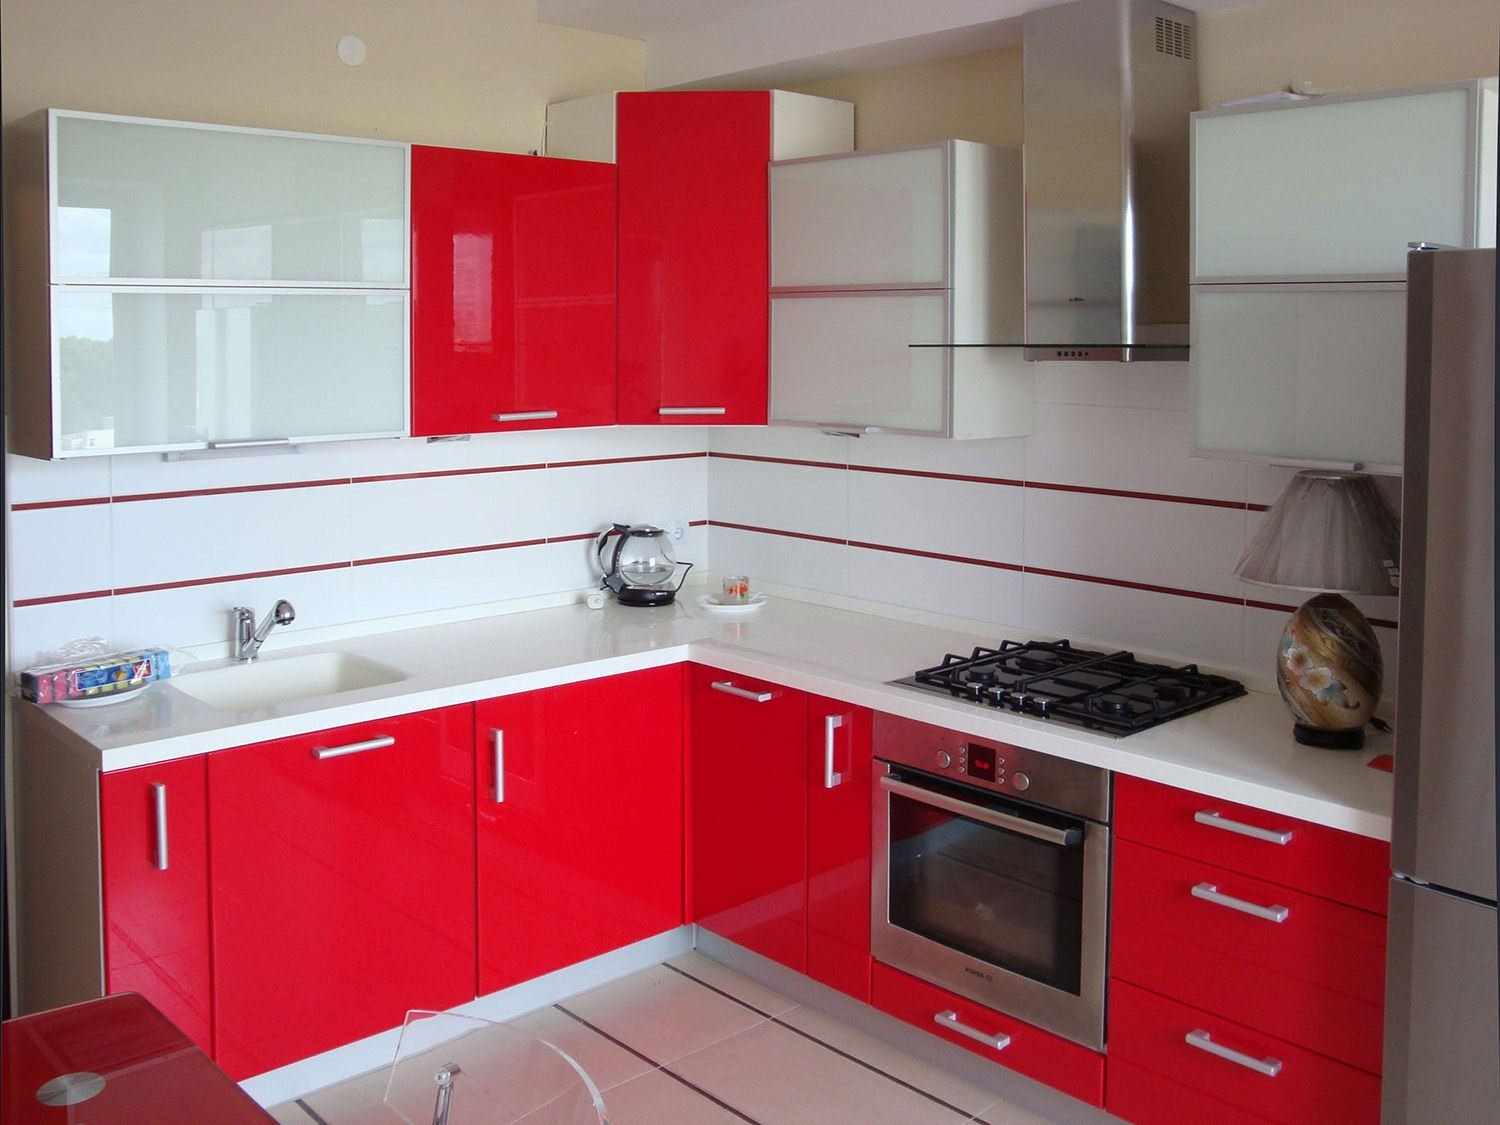 przykład jasnoczerwonego projektu kuchni